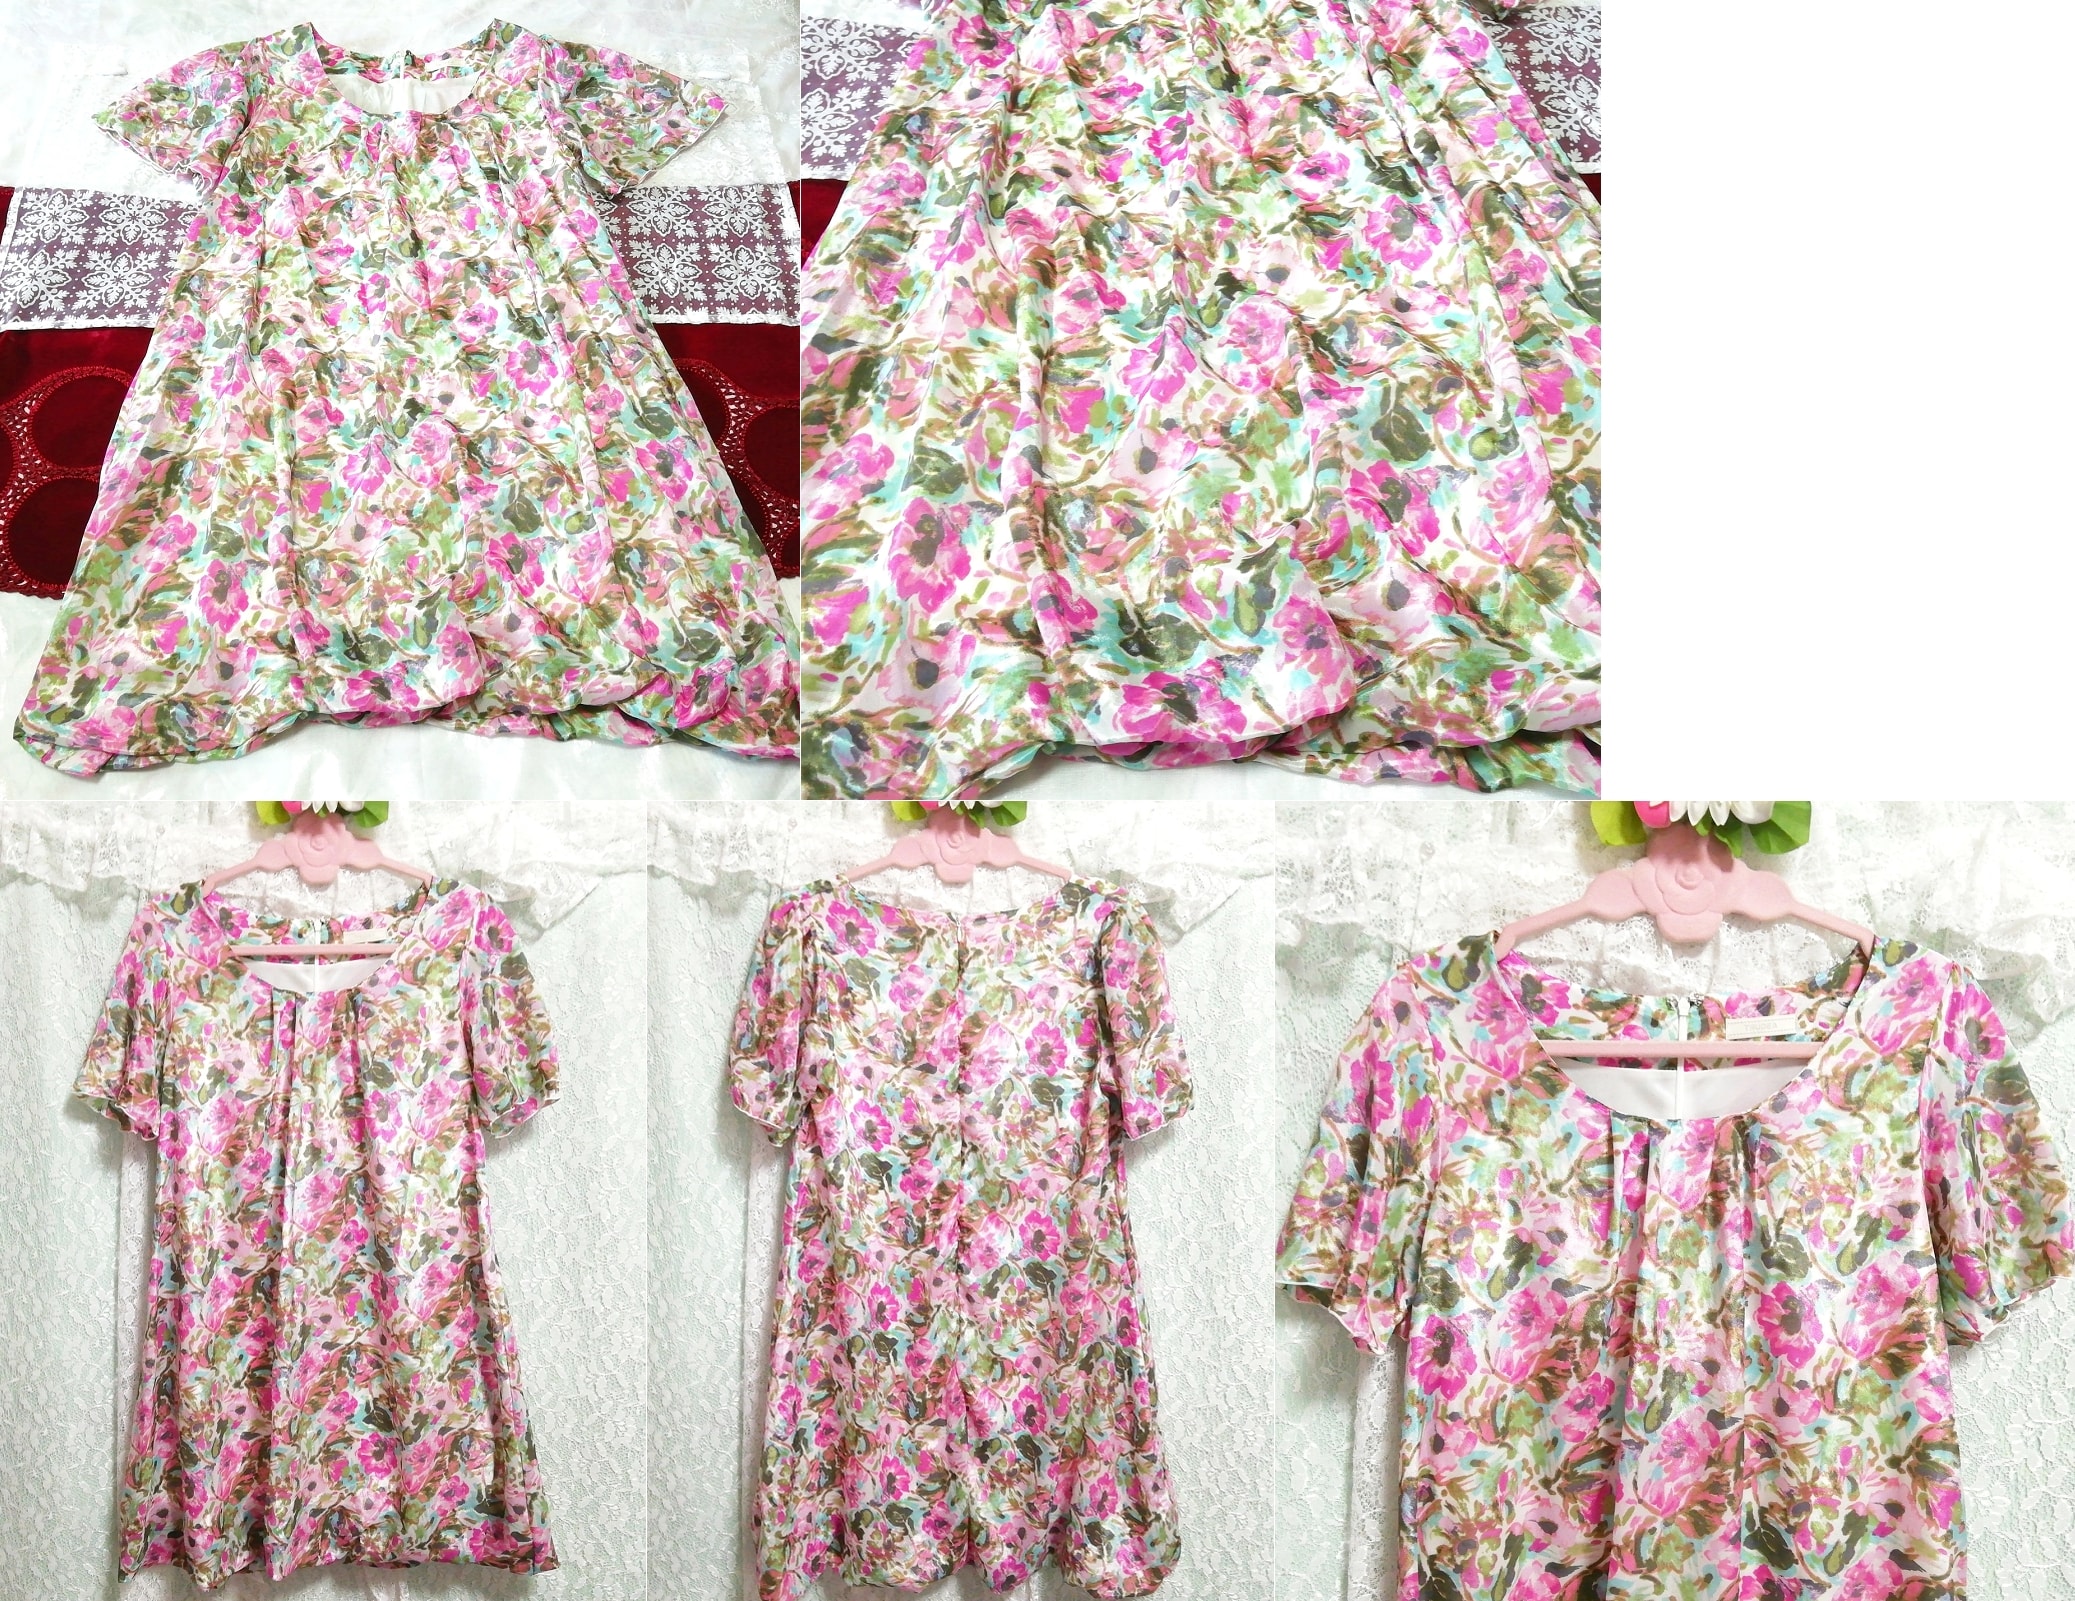 缎粉色浅蓝绿色花卉图案短袖束腰睡衣连衣裙, 外衣, 短袖